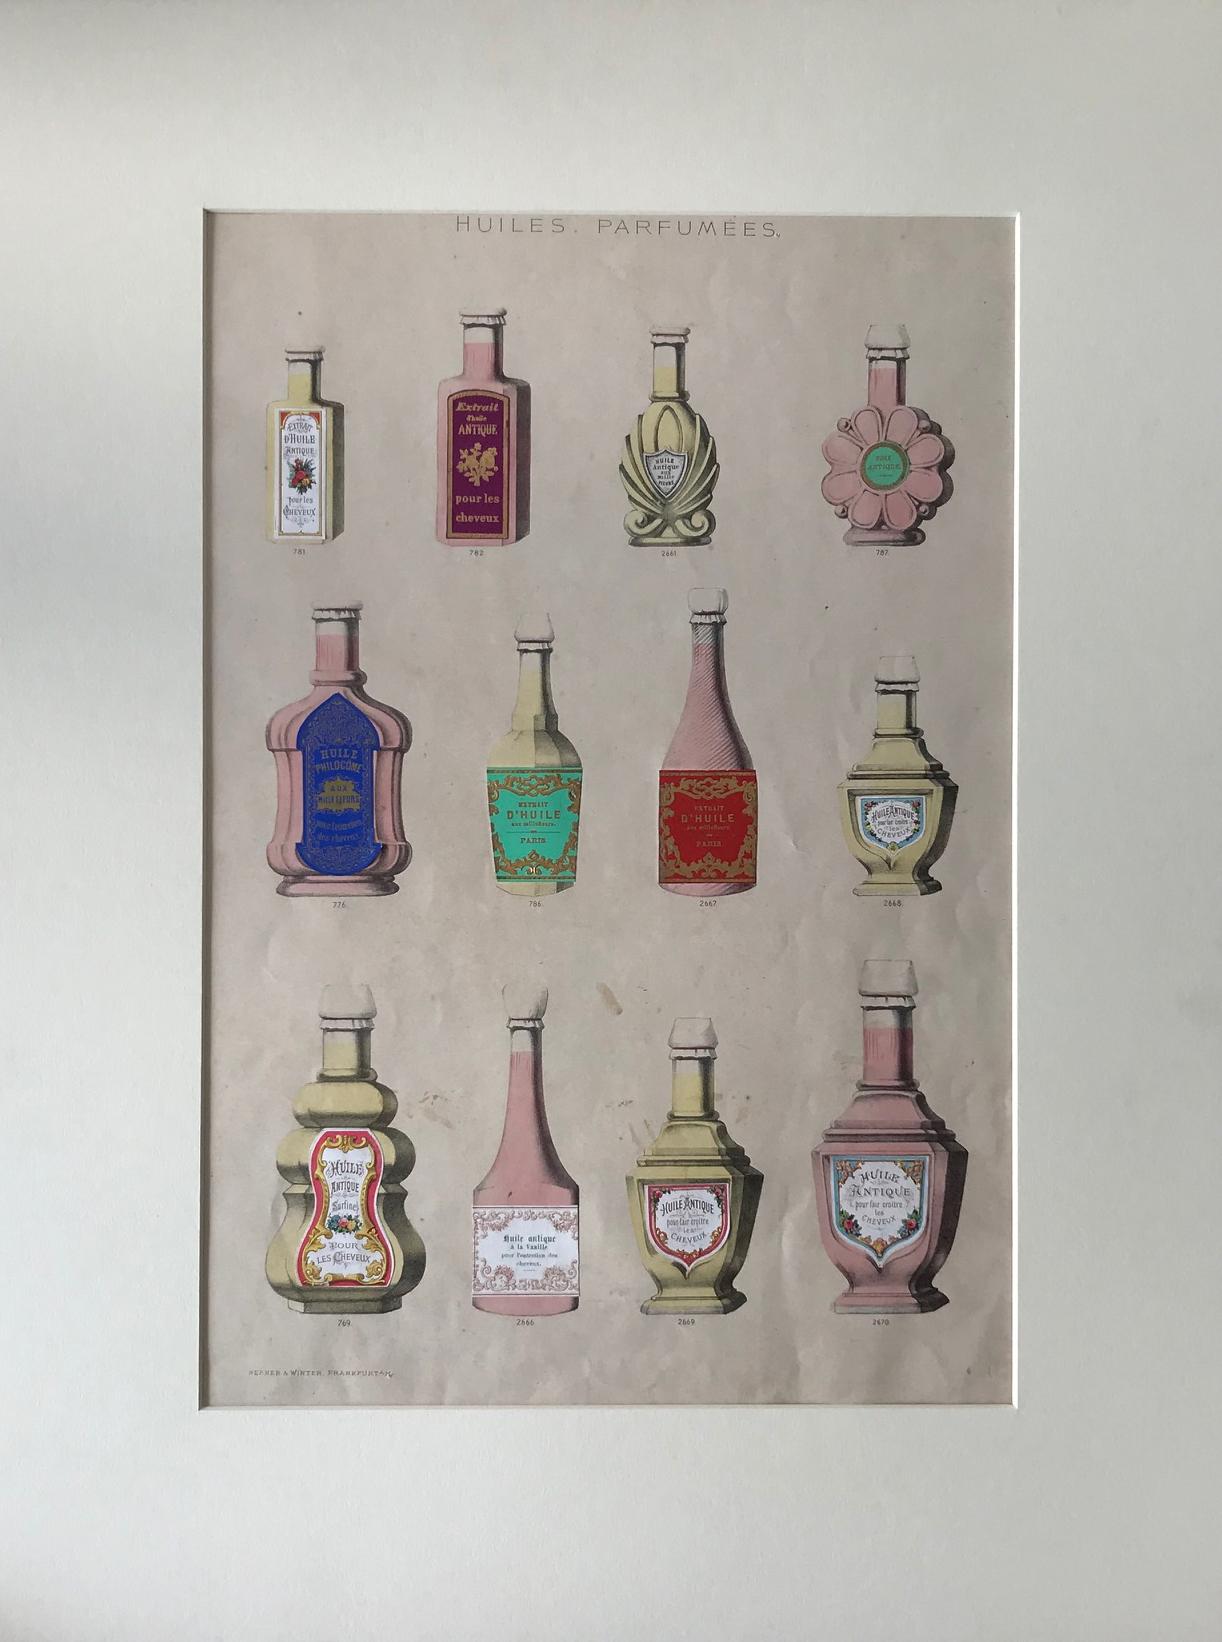 Werner & Winter Frankfurt Still-Life Print - Huiles Parfumees (Edition #6)